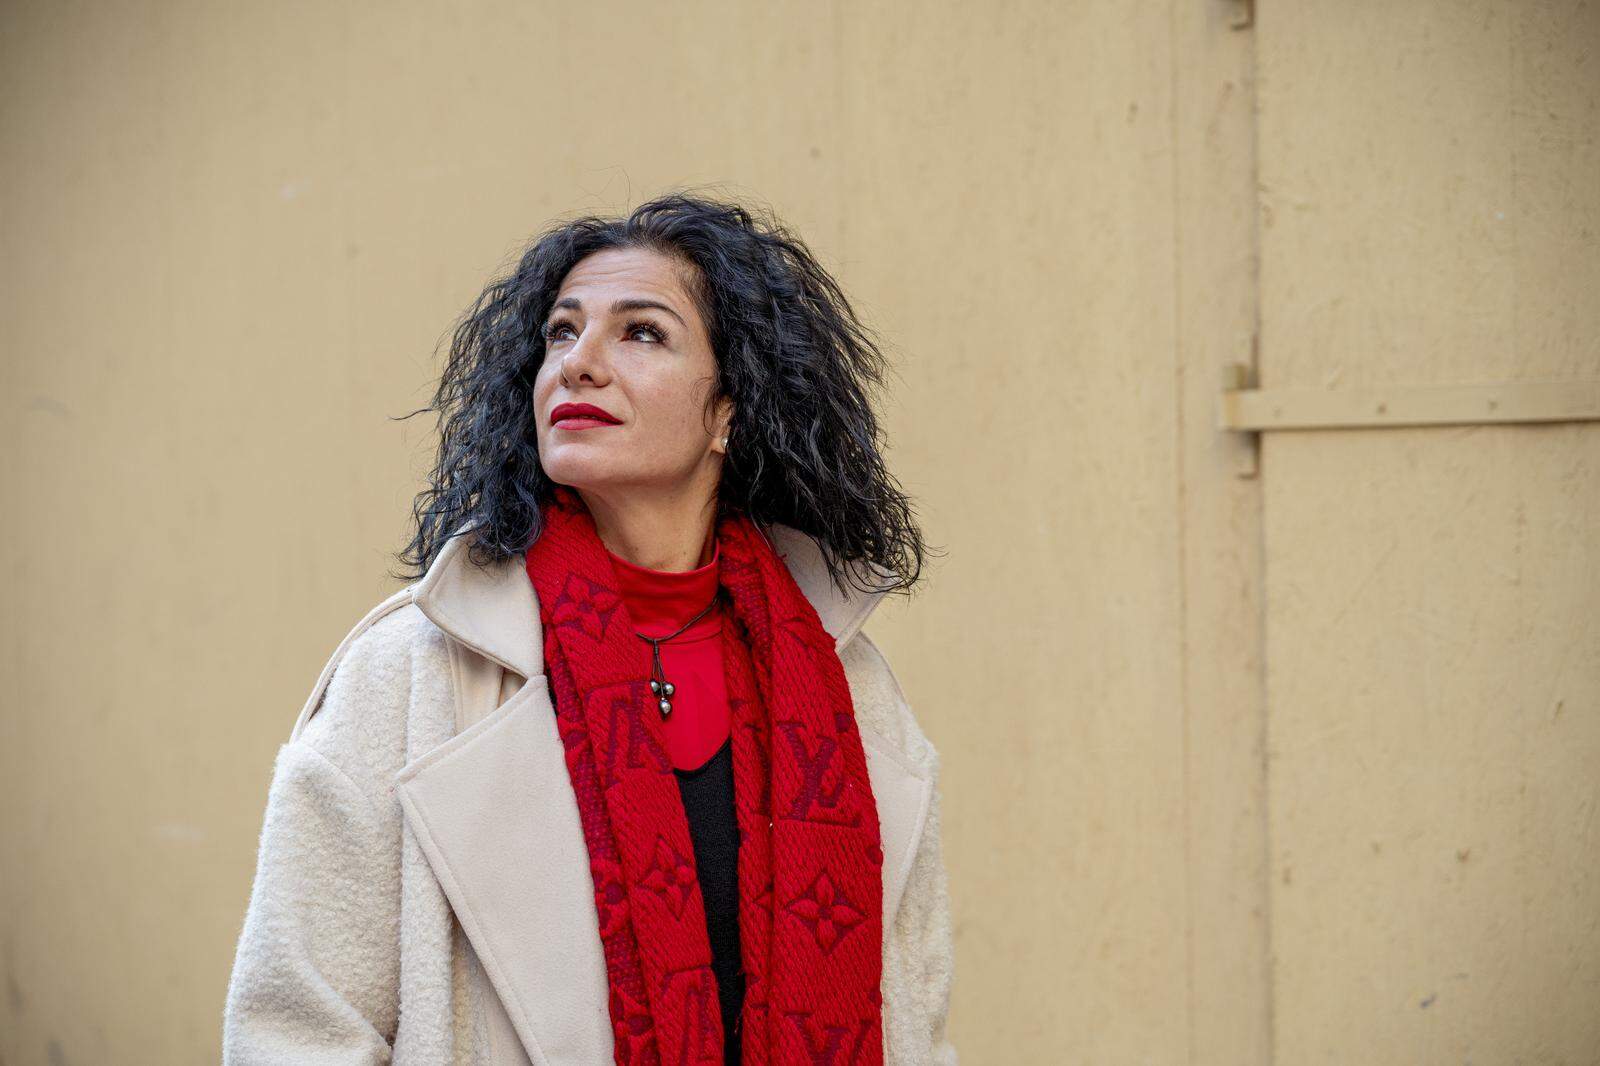 Zeliha Çiçek legte ihr Kopftuch ab und wurde von Gemeinschaft und Familie diskriminiert